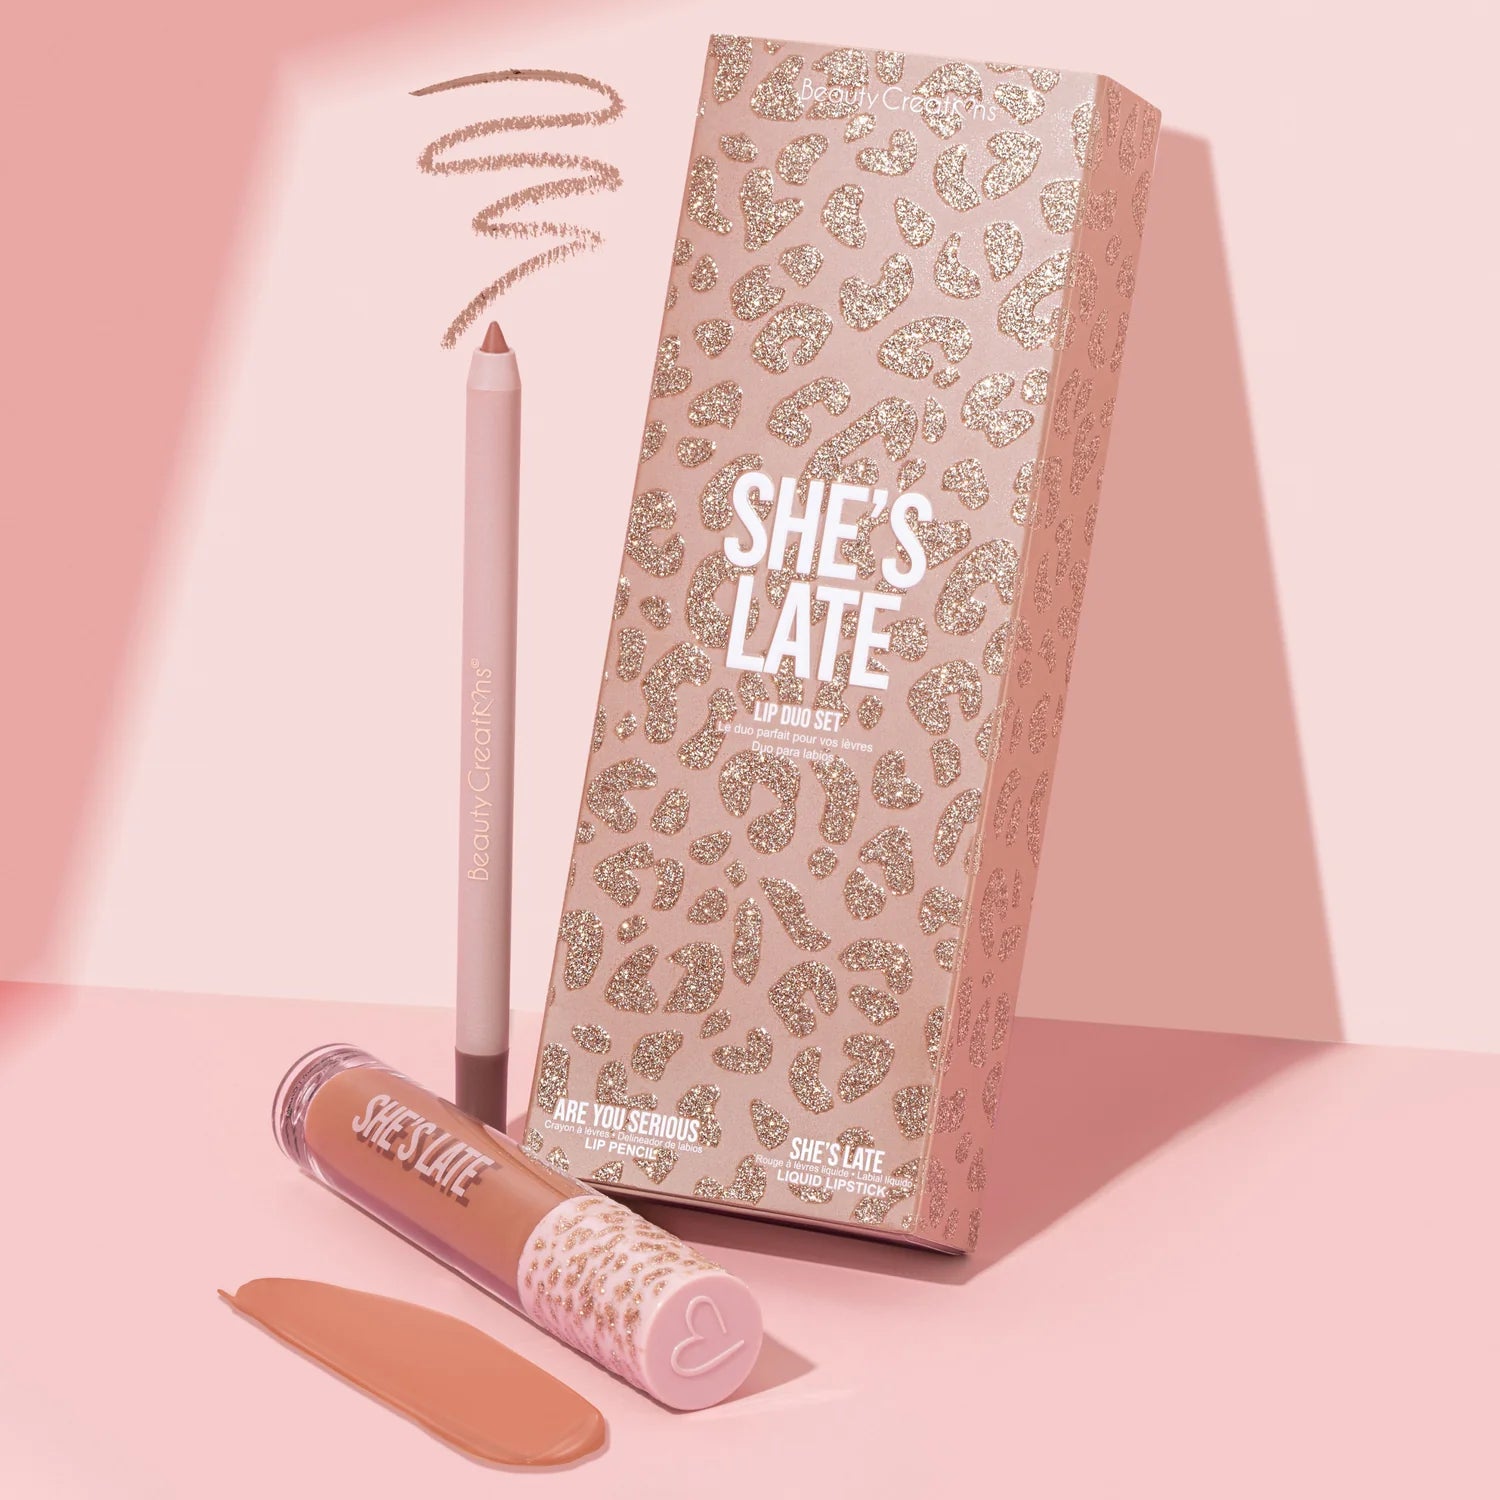 Beauty Creations - Availabilippy Lip Kit She's A Latte